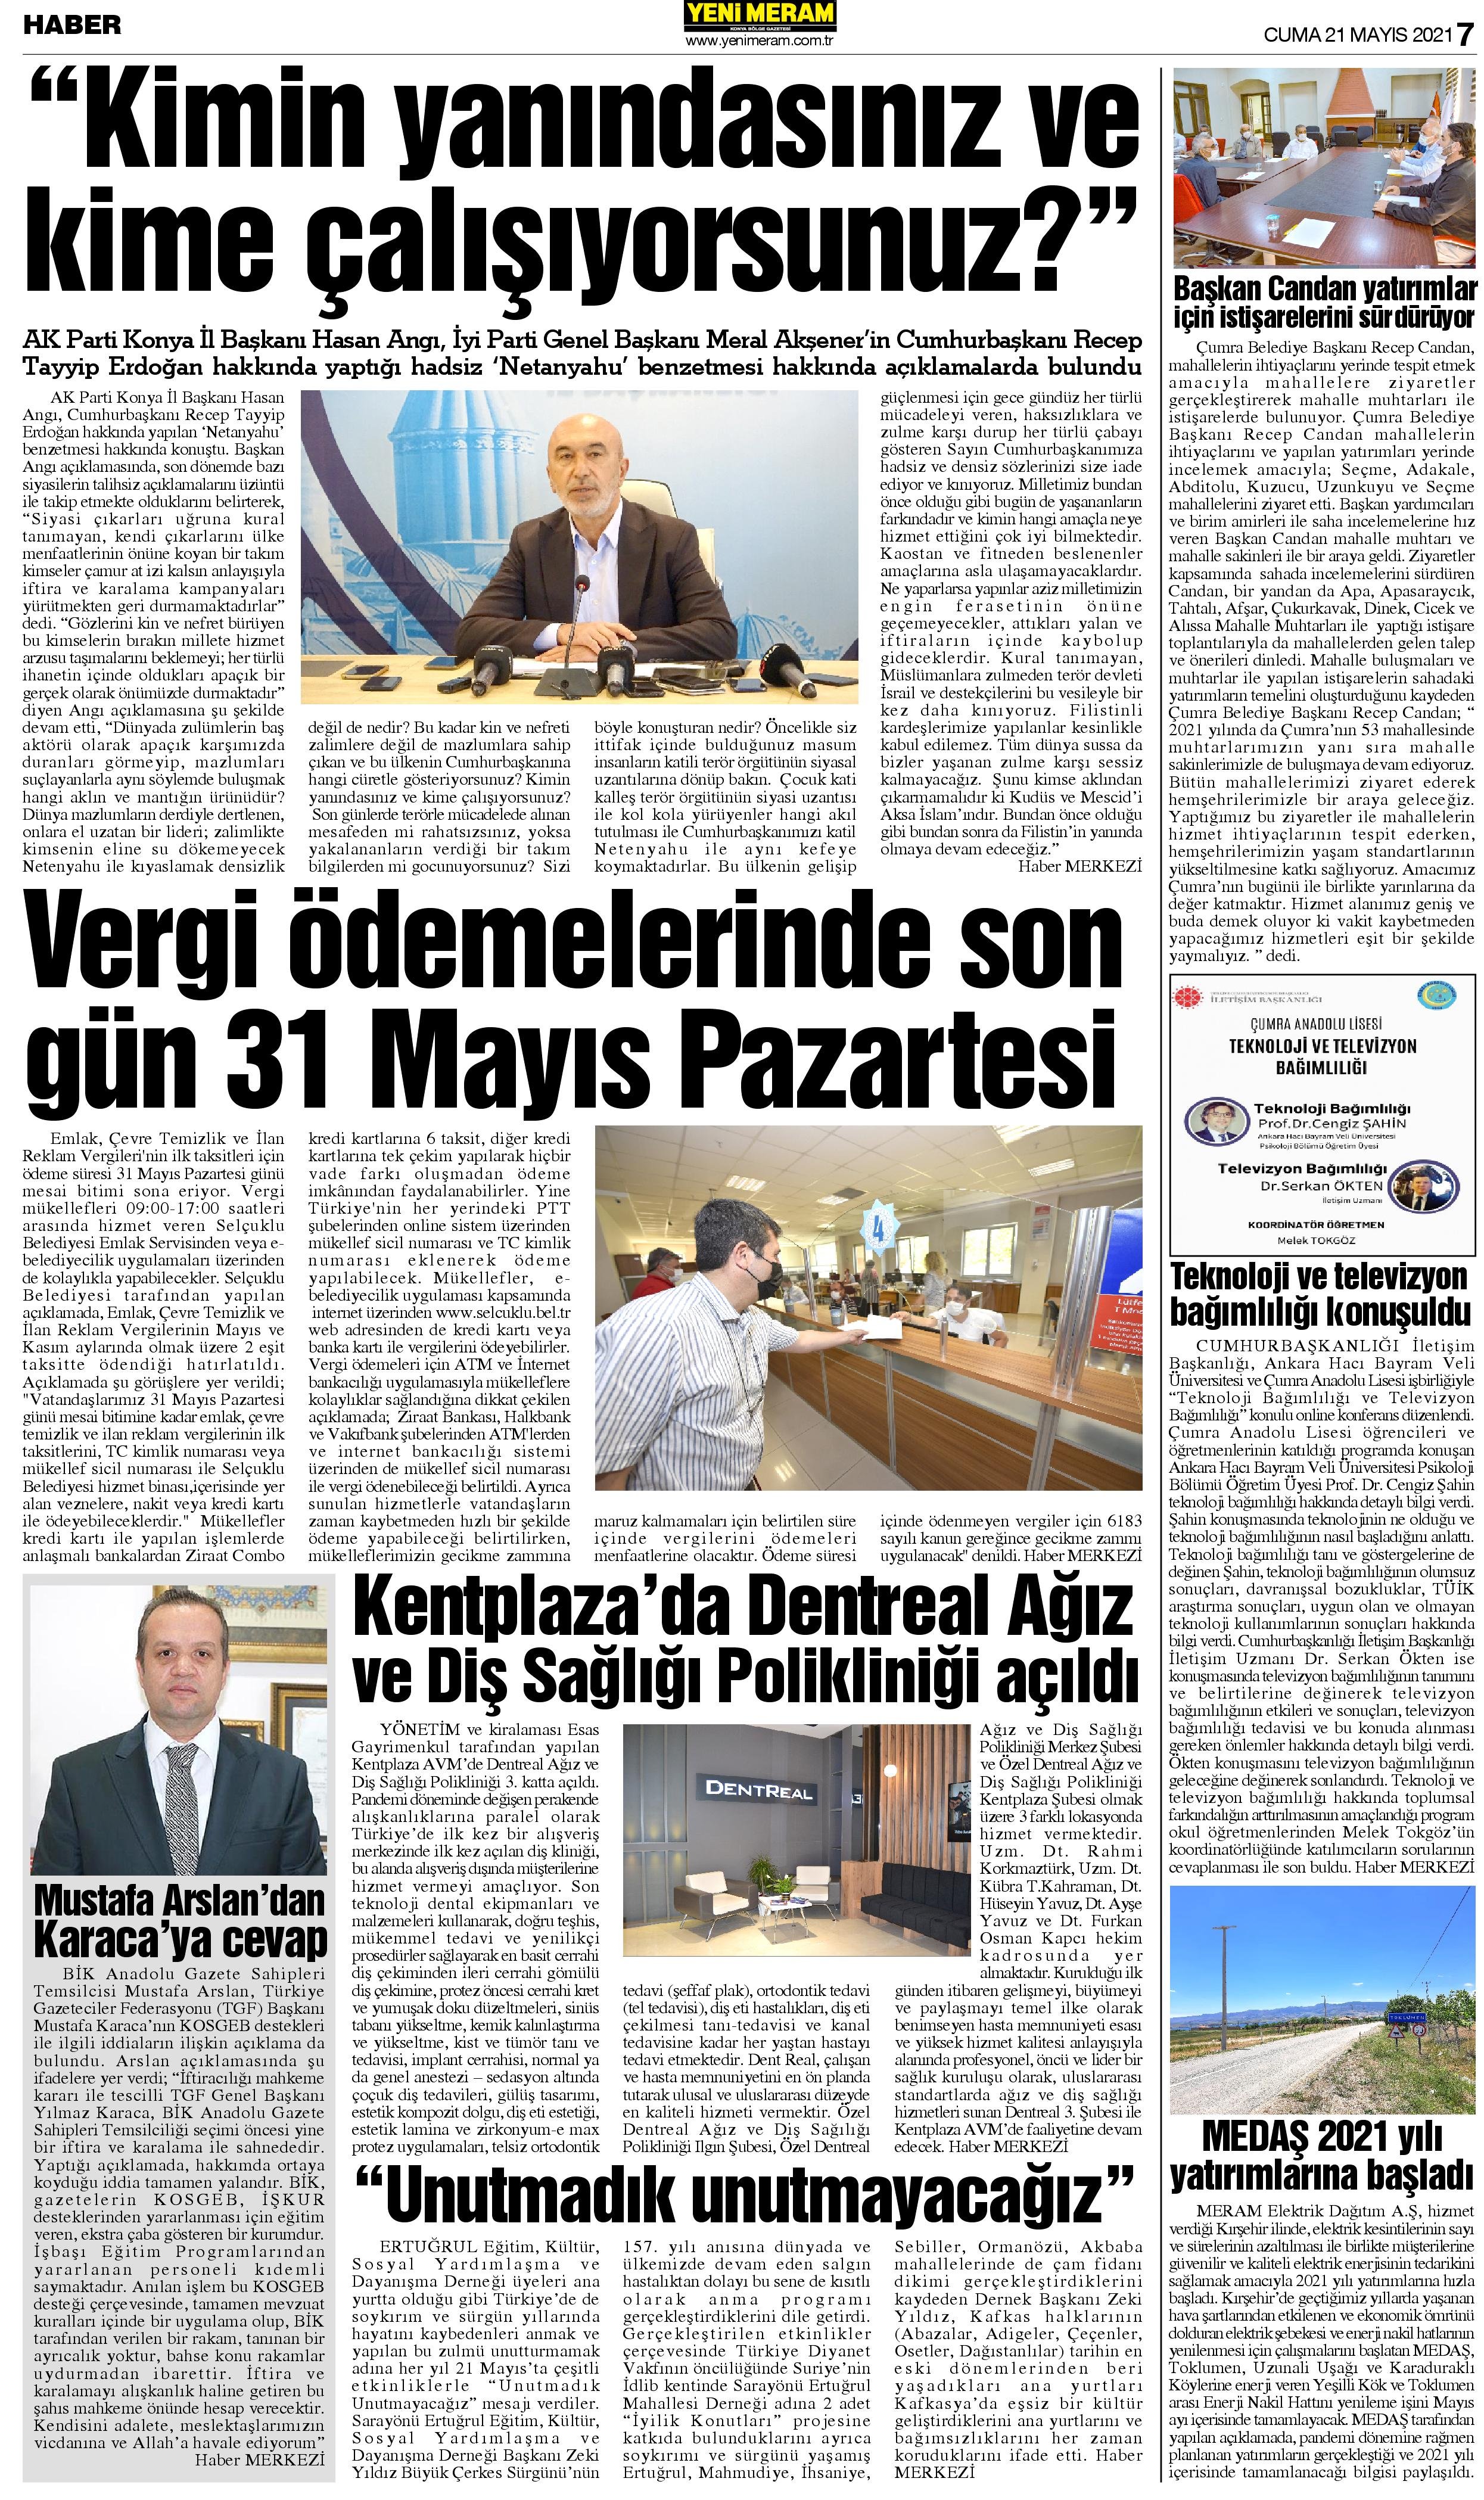 21 Mayıs 2021 Yeni Meram Gazetesi
